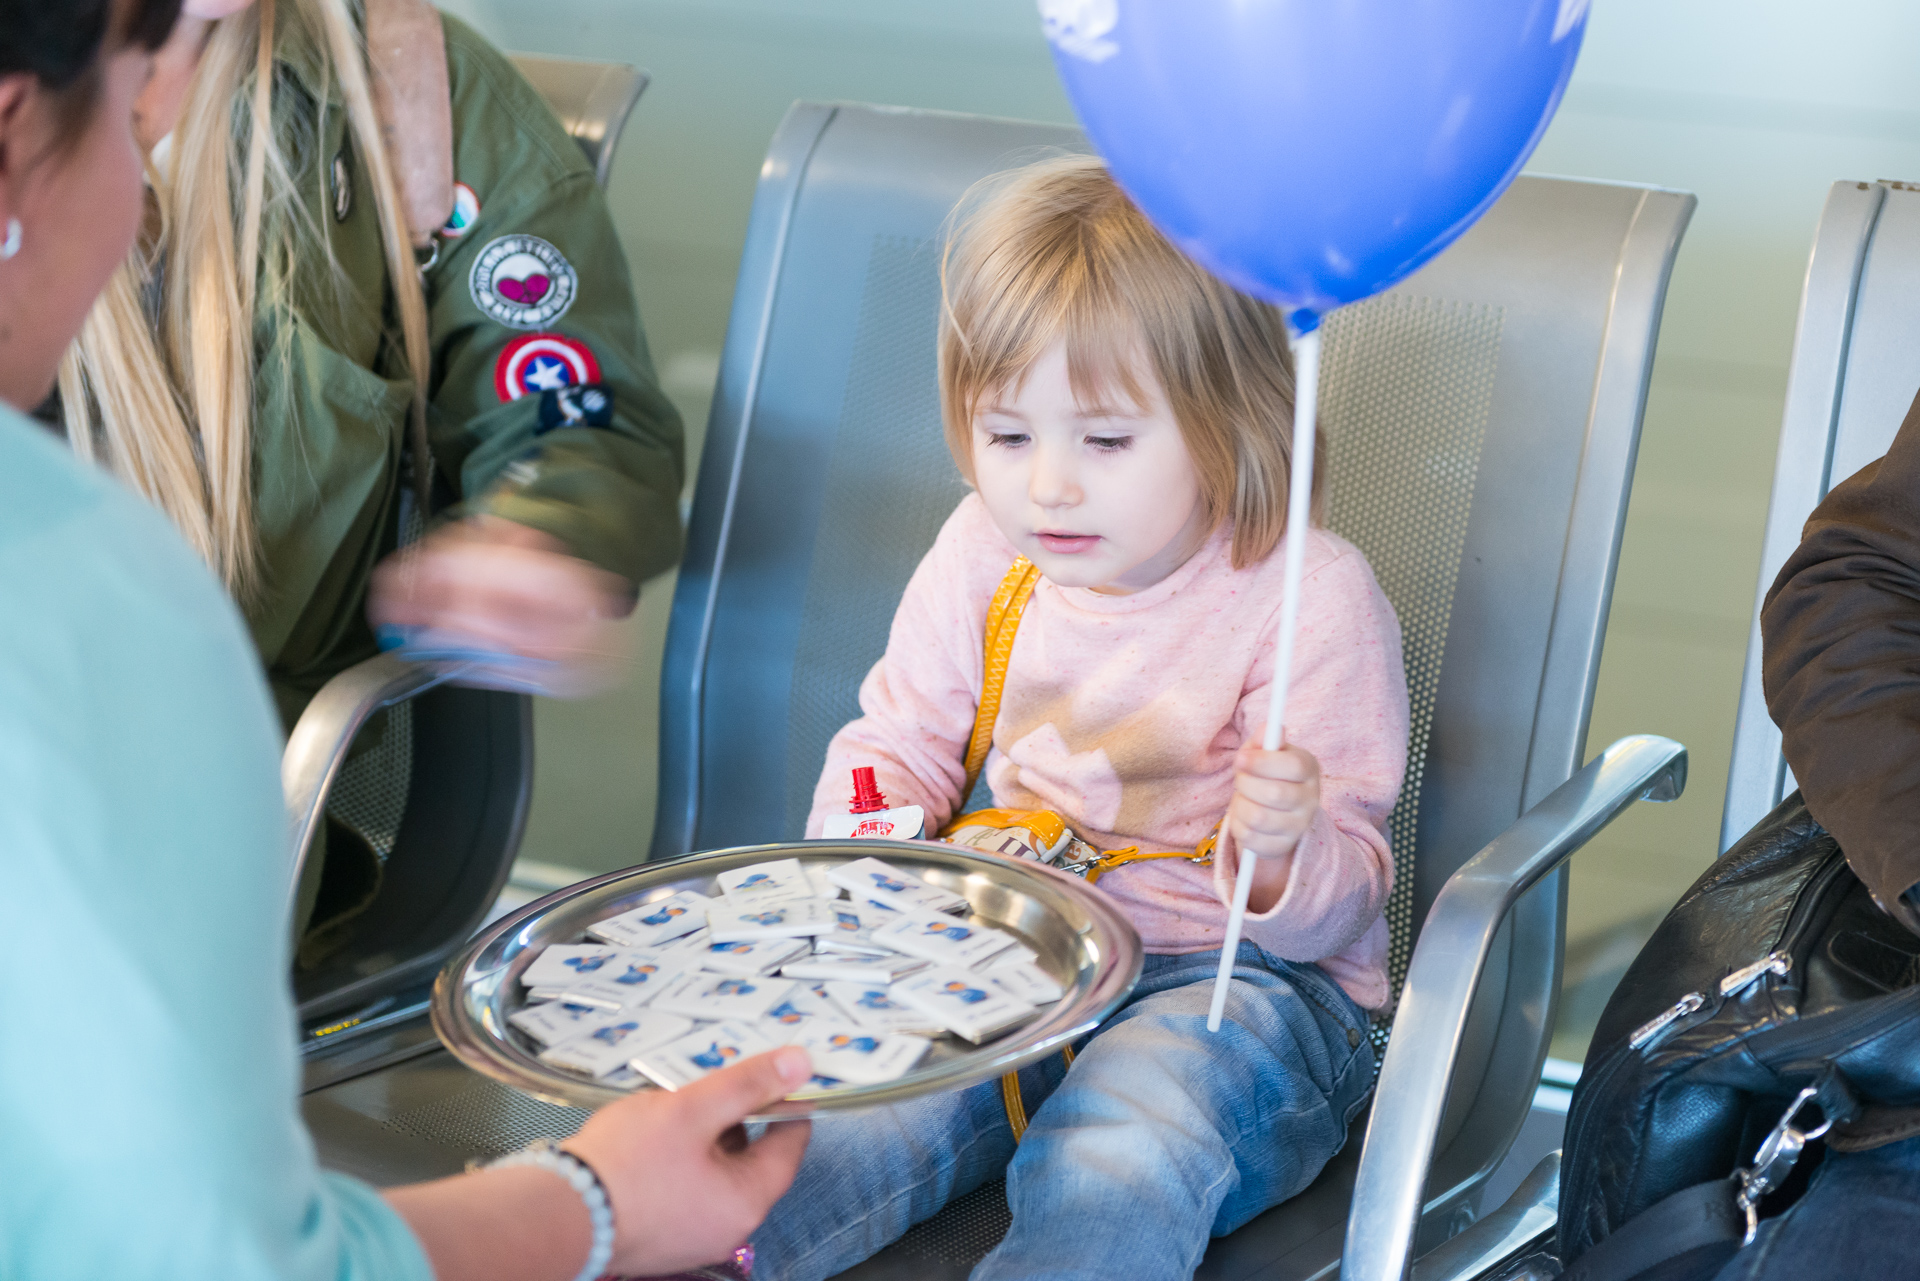 Аэропорт Внуково поздравляет с Днем защиты детей | Международный аэропорт Внуково